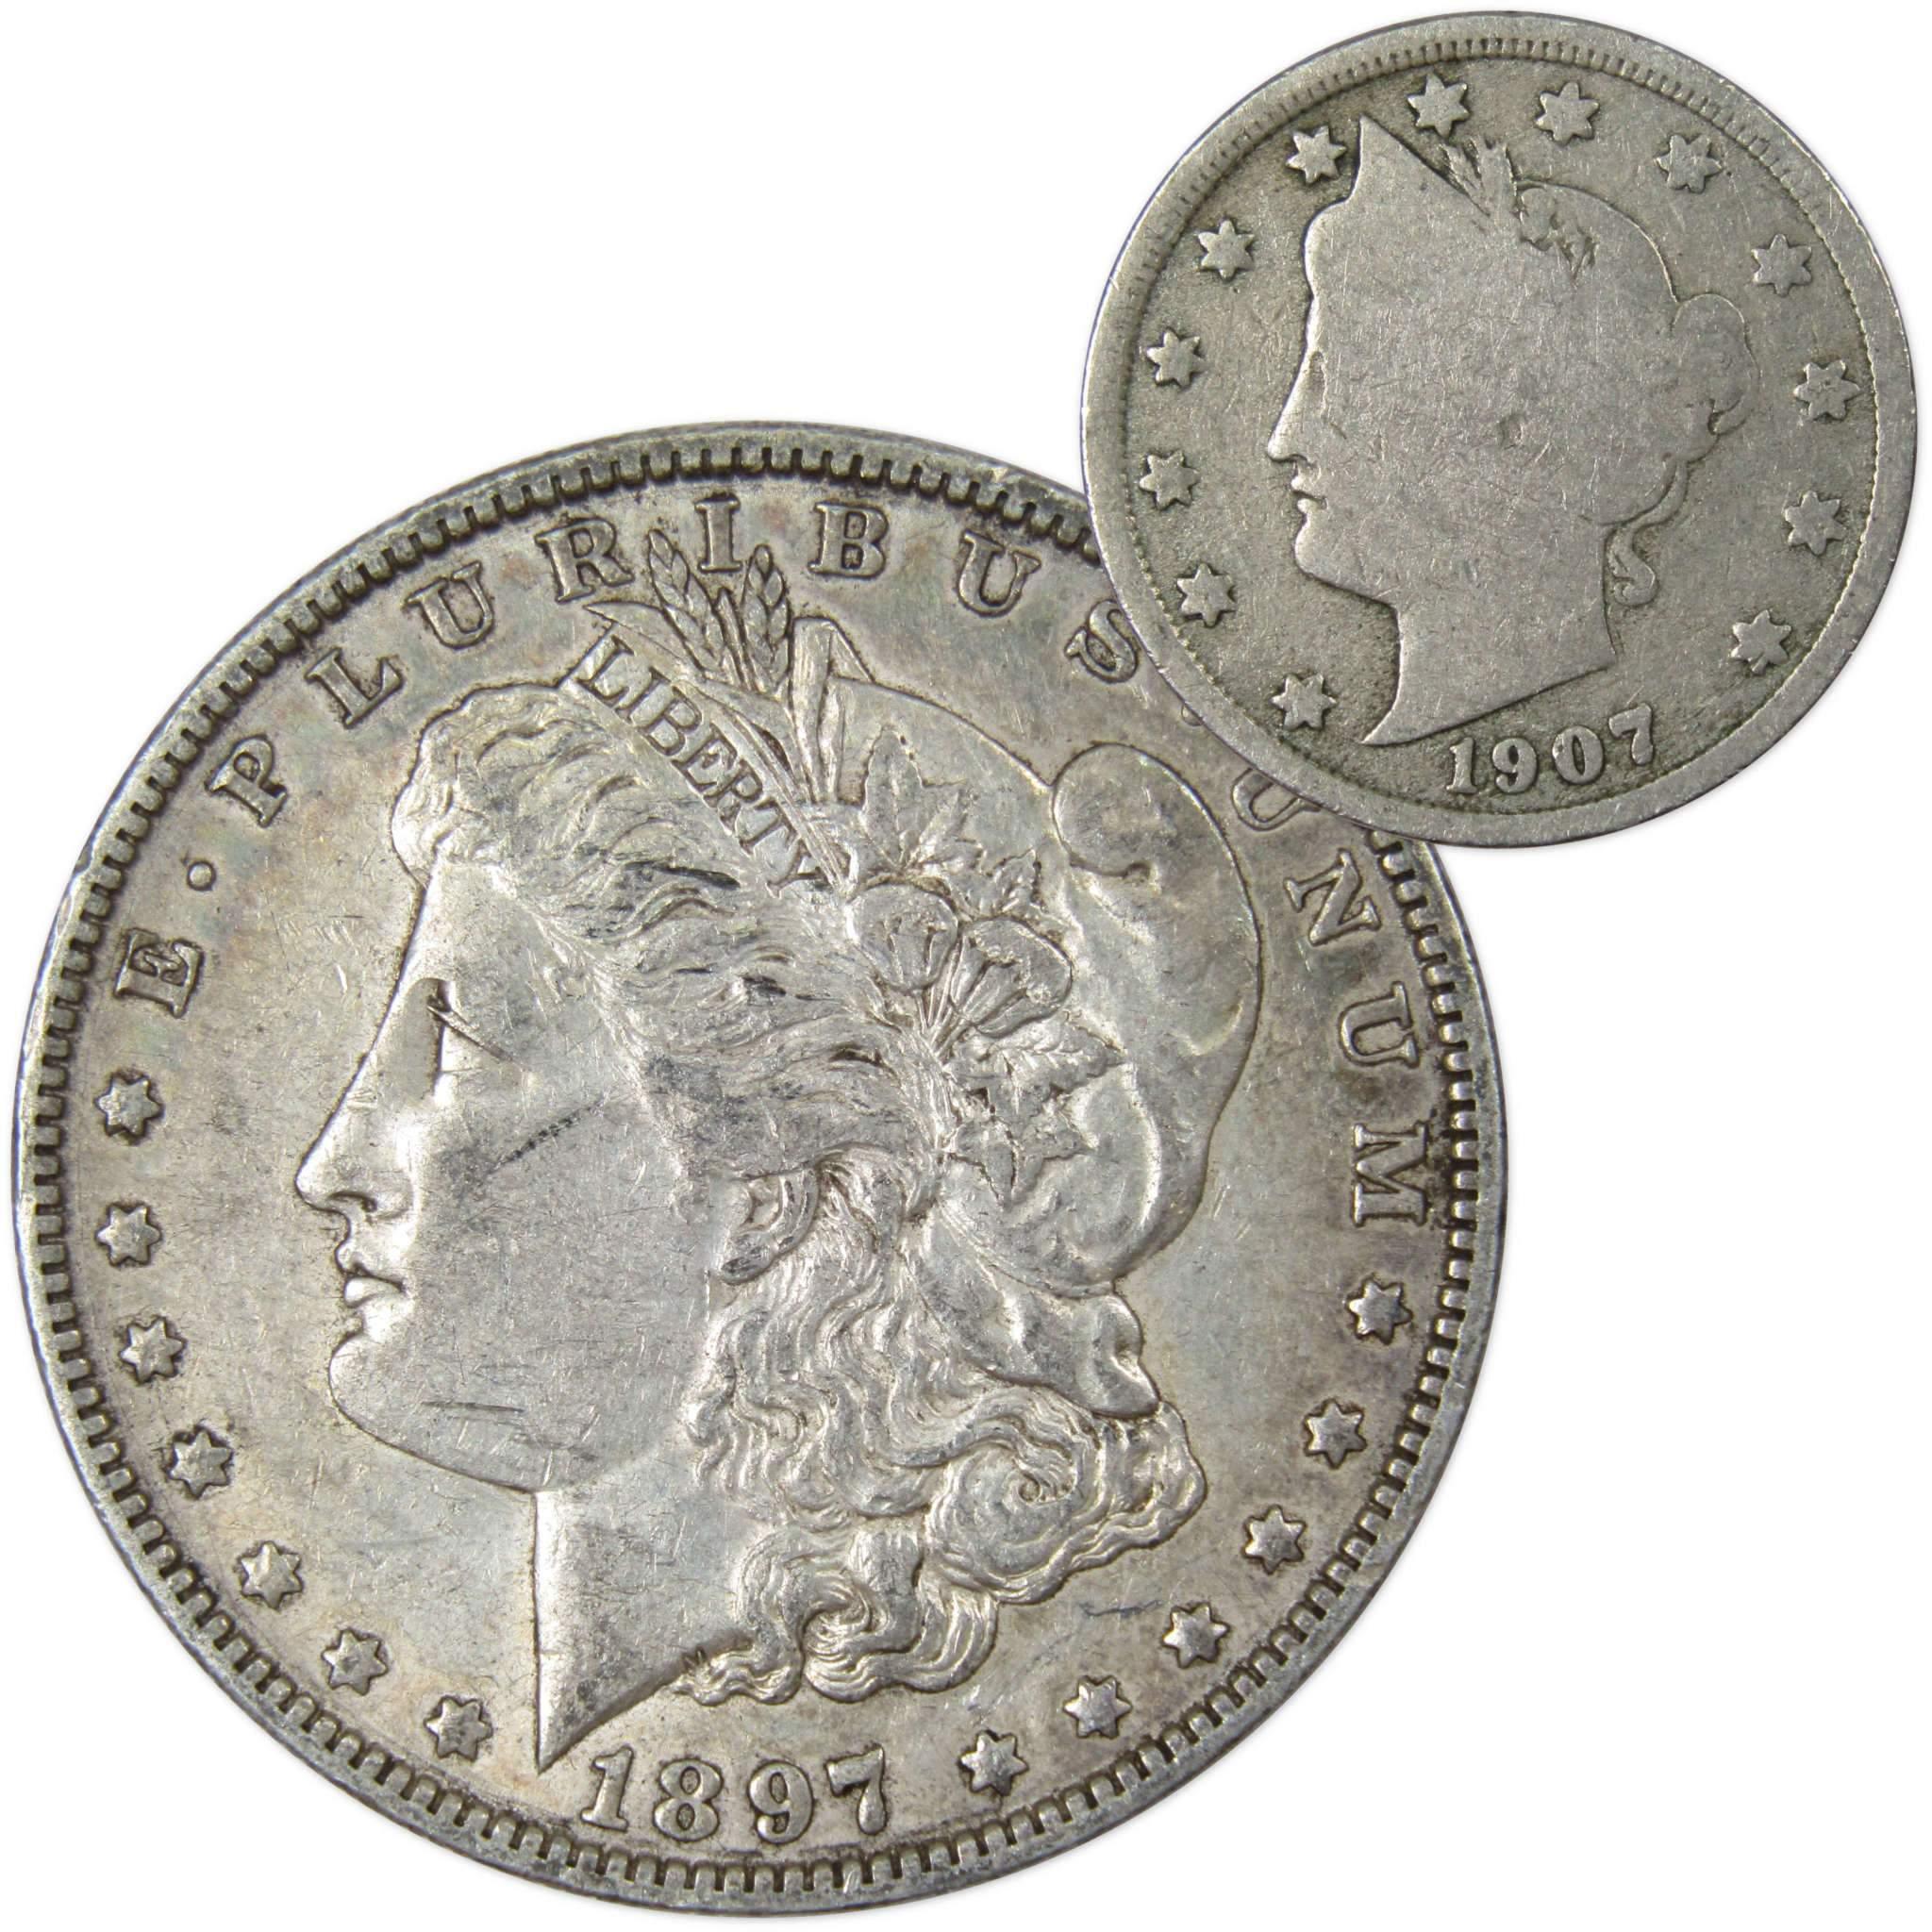 1897 O Morgan Dollar VF Very Fine 90% Silver with 1907 Liberty Nickel G Good - Morgan coin - Morgan silver dollar - Morgan silver dollar for sale - Profile Coins &amp; Collectibles